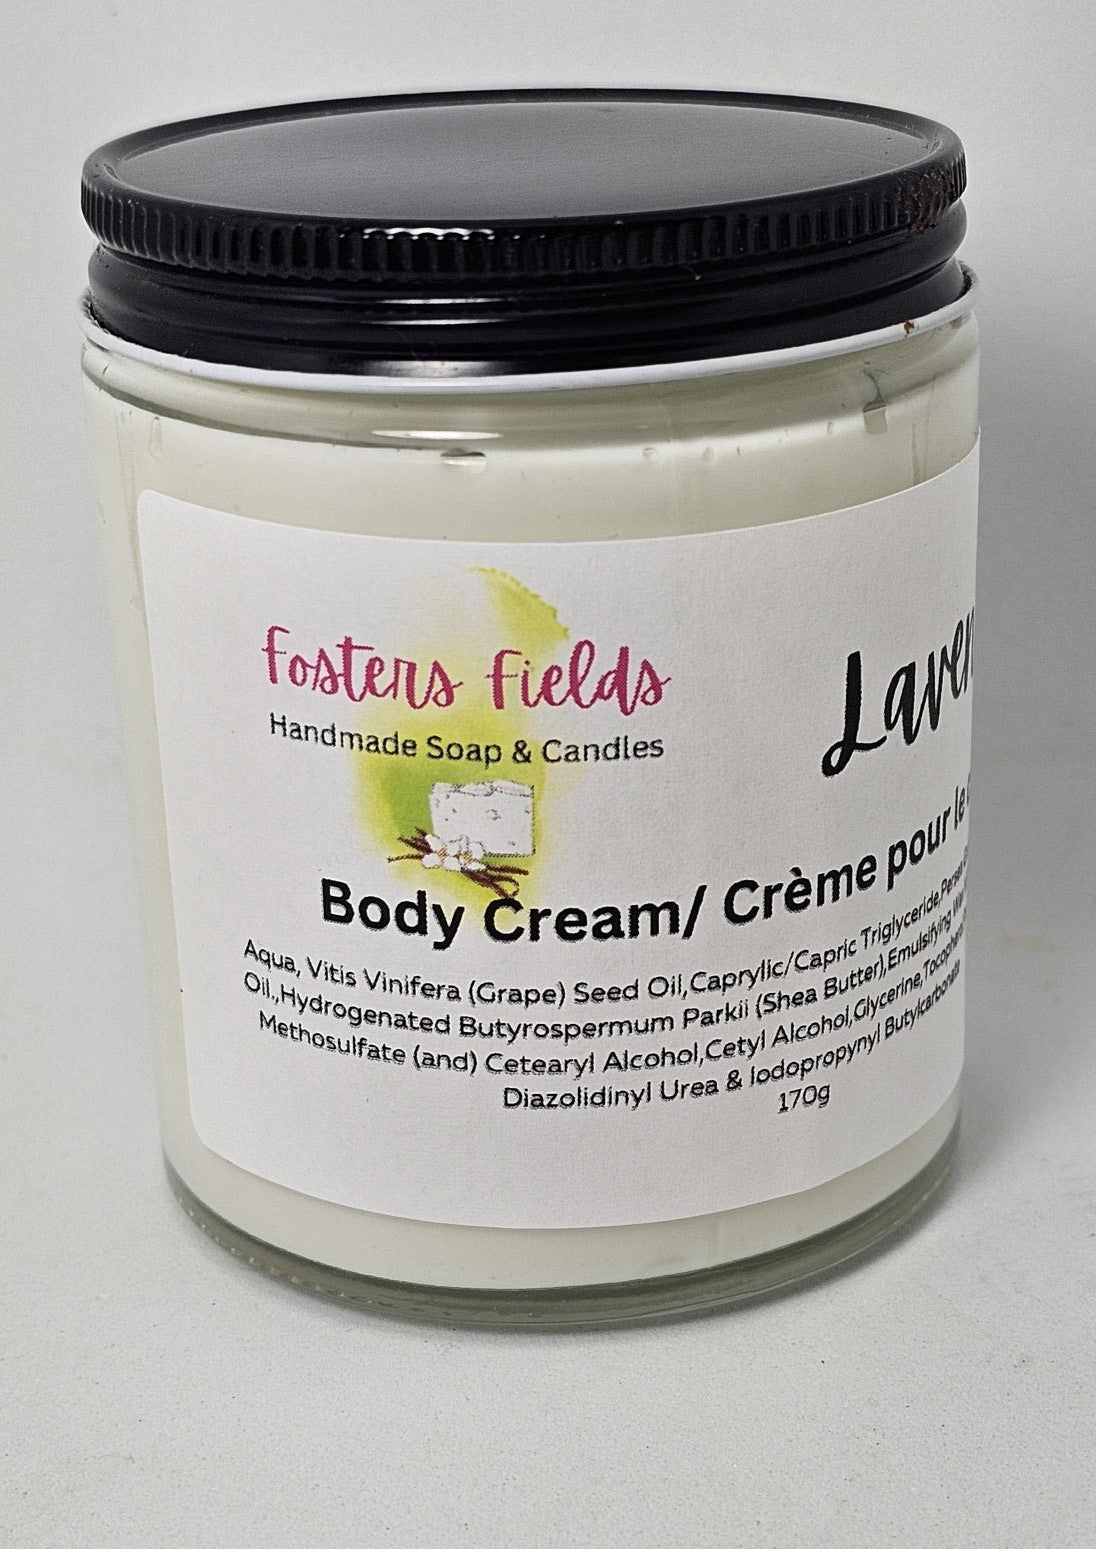 Lavender Body Cream - FostersFieldssoap#soycandles#fostersfields#handmadesoap#natural soapBody CreamLavender Body Cream